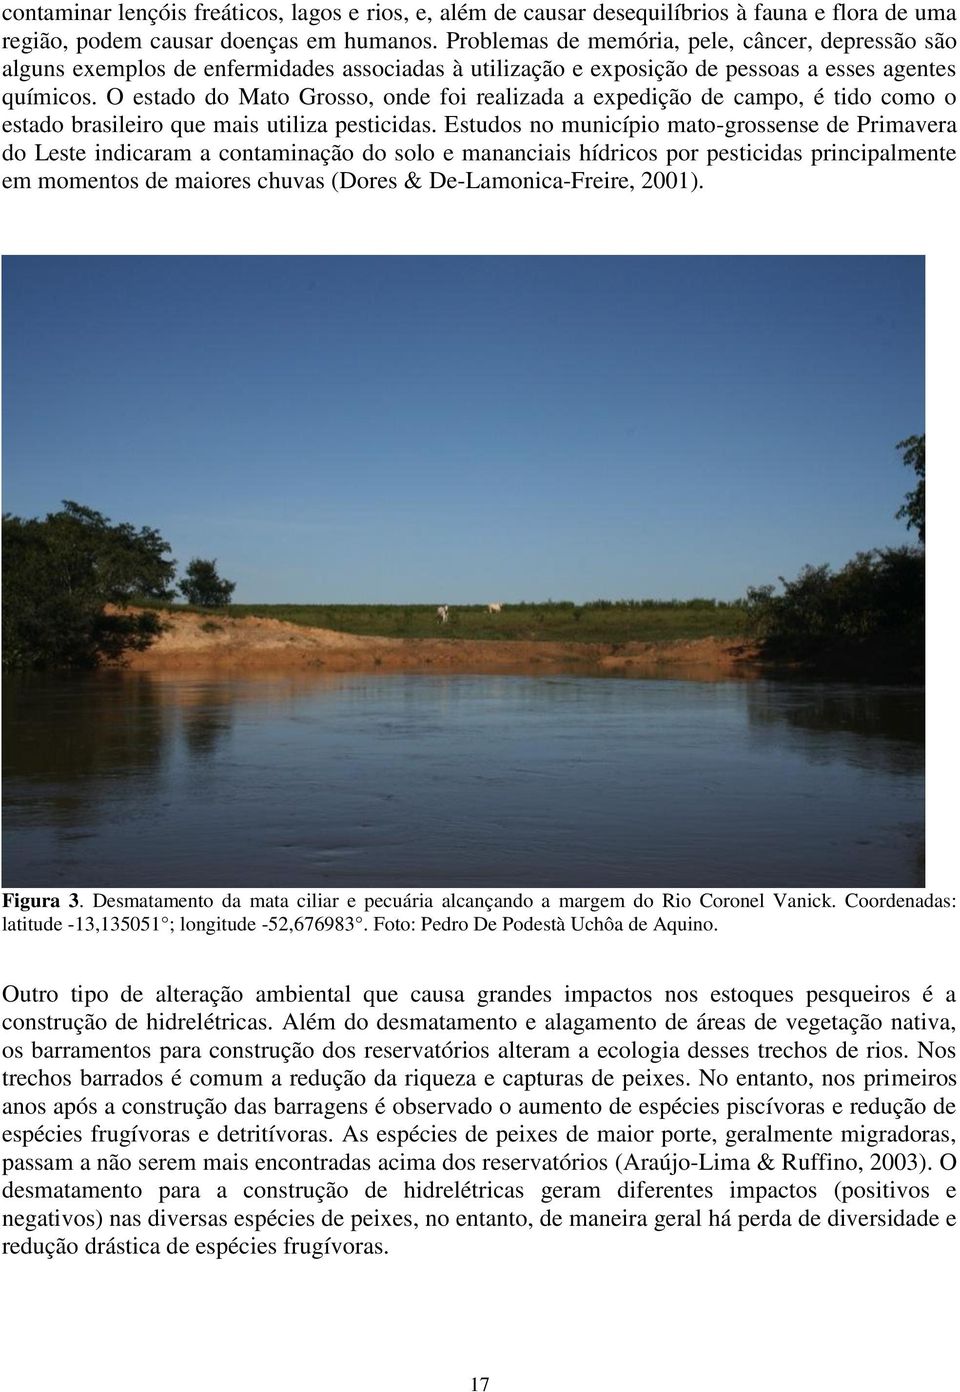 O estado do Mato Grosso, onde foi realizada a expedição de campo, é tido como o estado brasileiro que mais utiliza pesticidas.